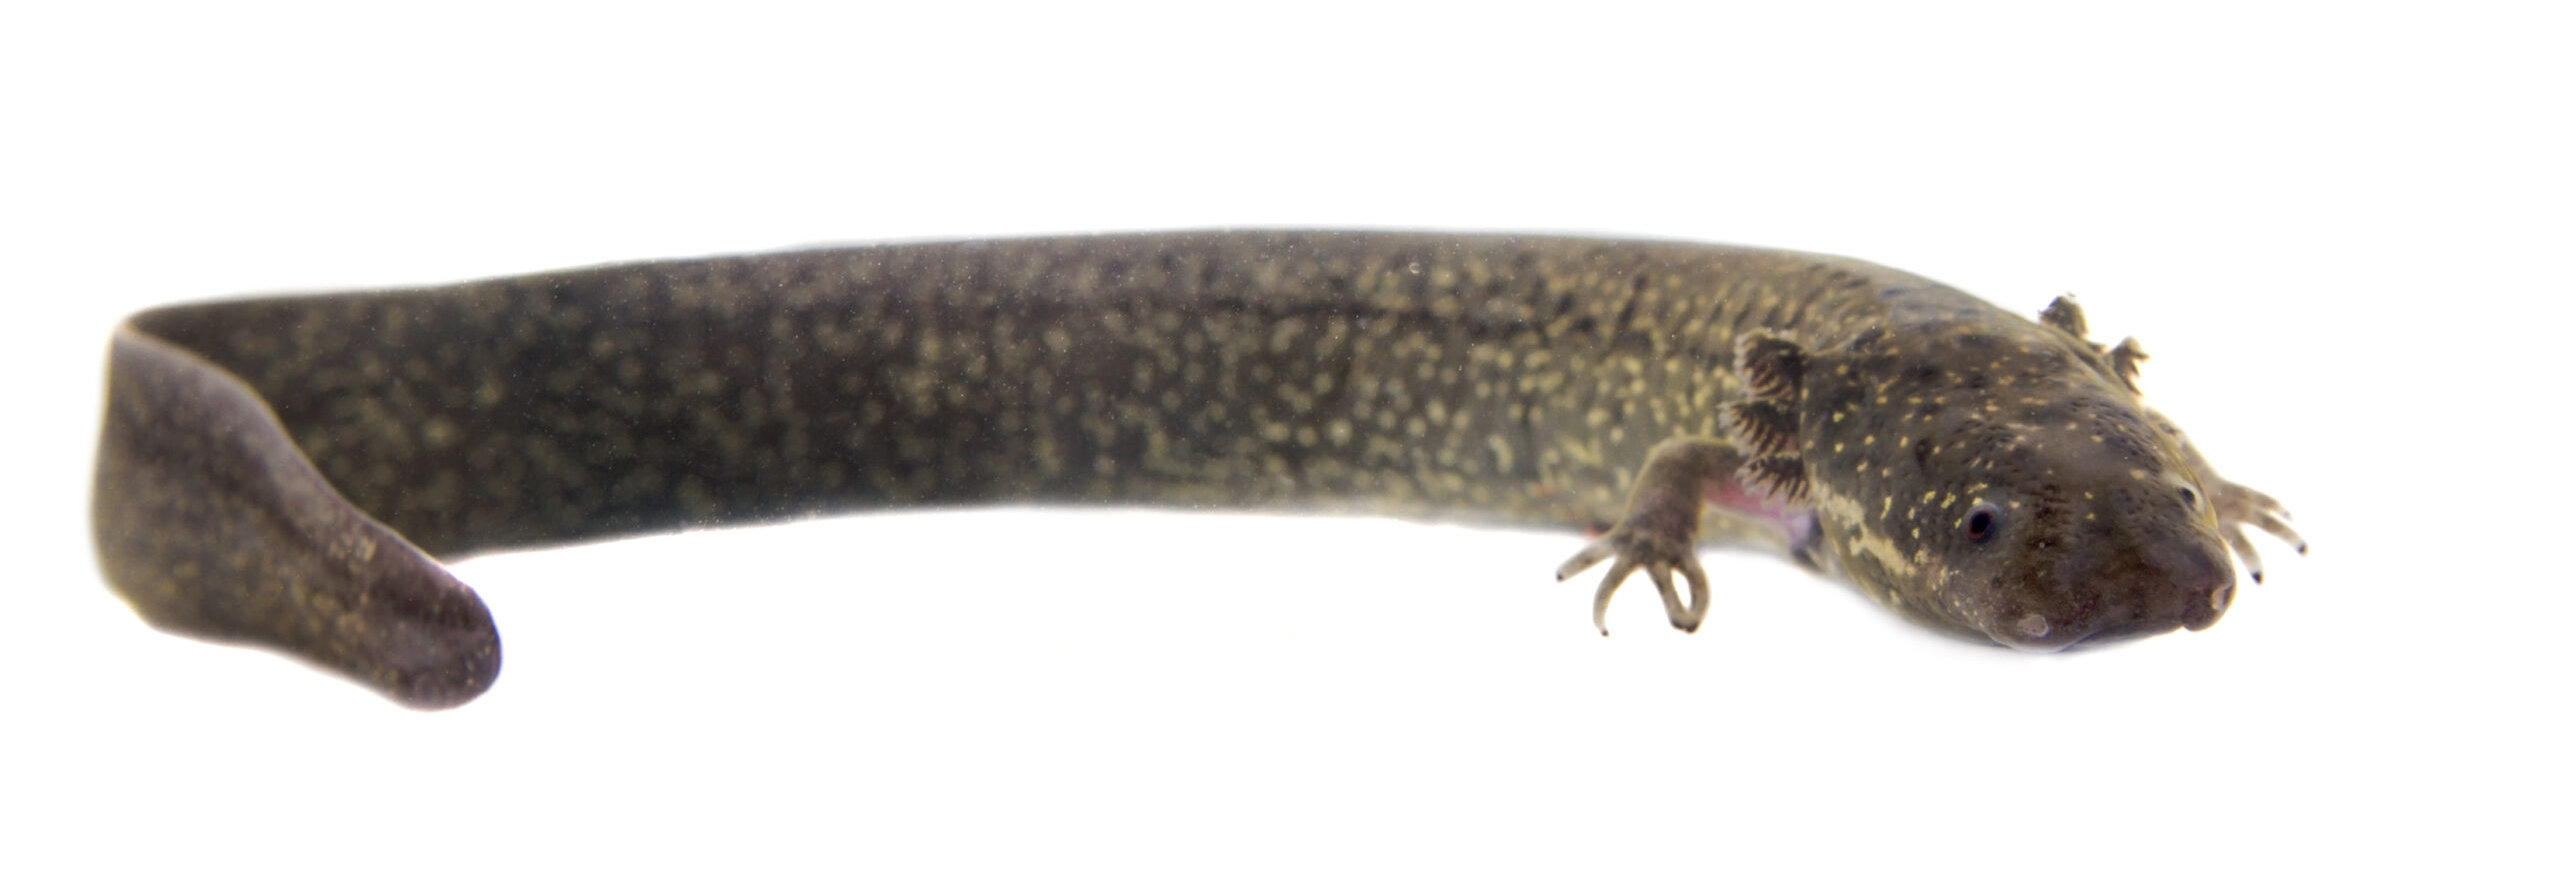 siren-salamander